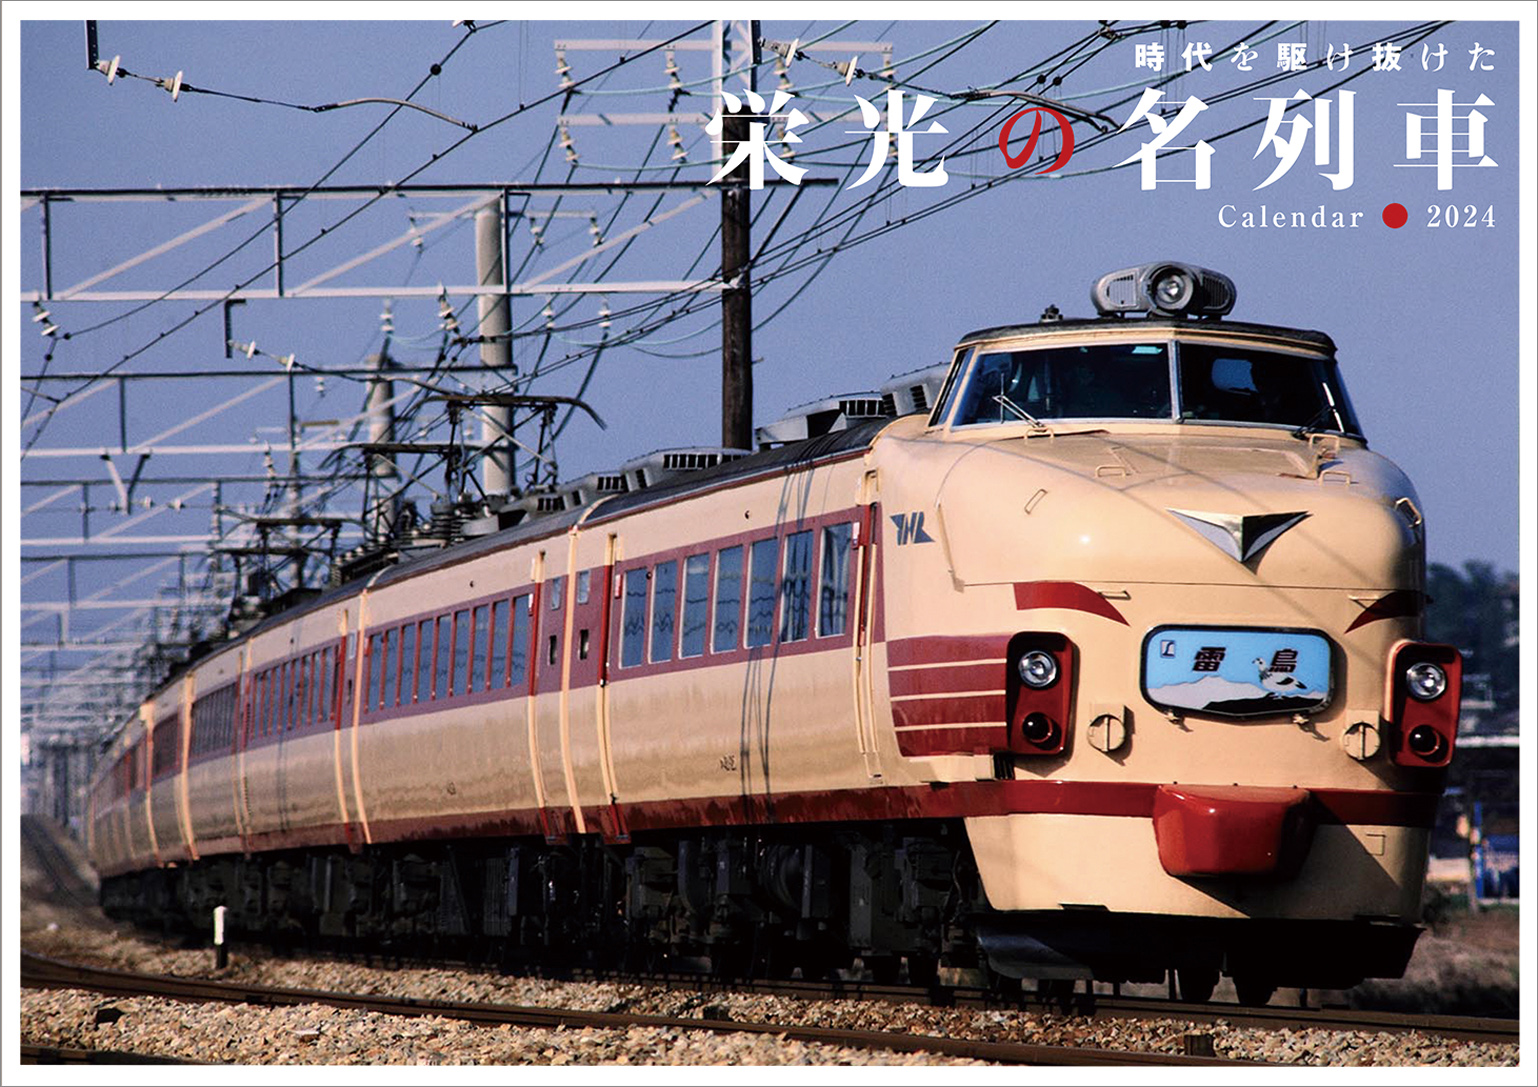 24 栄光の名列車カレンダー | 出版物 | 株式会社交通新聞社